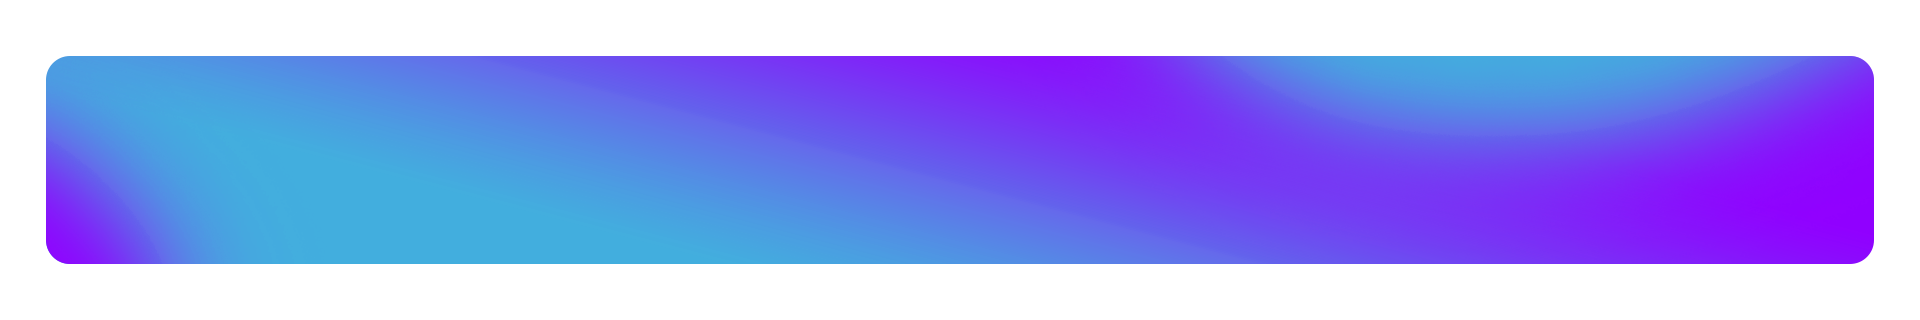 青 紫 グラデーション - KibrisPDR